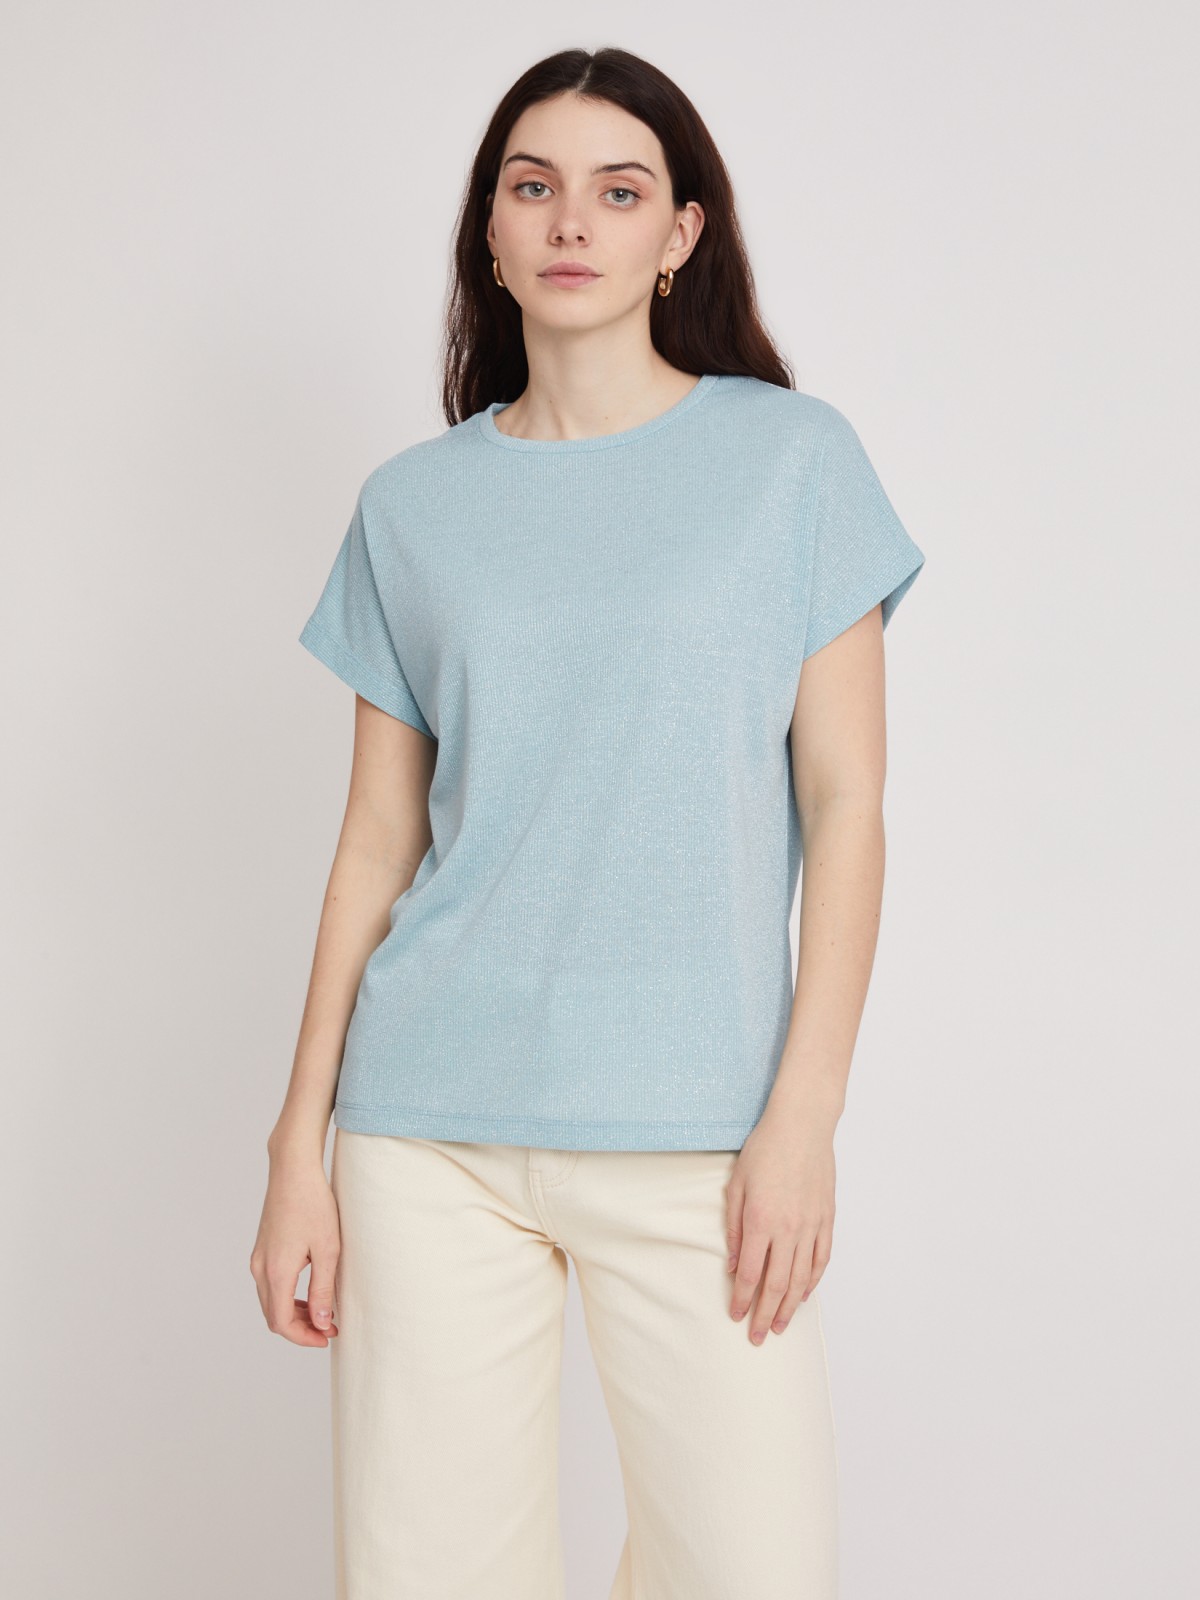 Топ-блузка с люрексом zolla 023233226023, цвет мятный, размер XS - фото 5